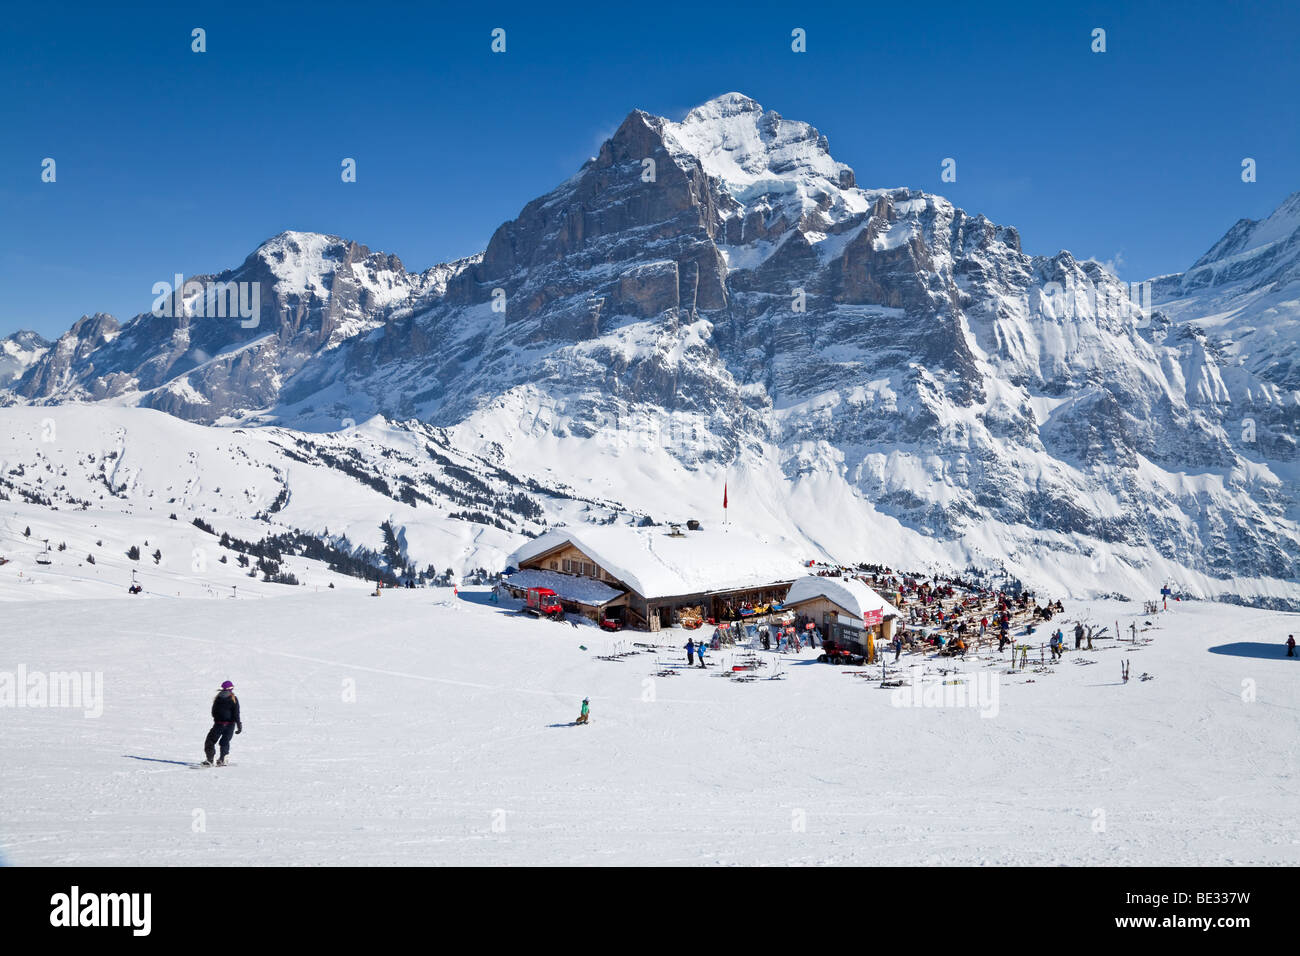 Ristorante di montagna con il Wetterhorn mountain (3692m) sullo sfondo, Grindelwald, regione di Jungfrau, Oberland bernese, SWI. Foto Stock